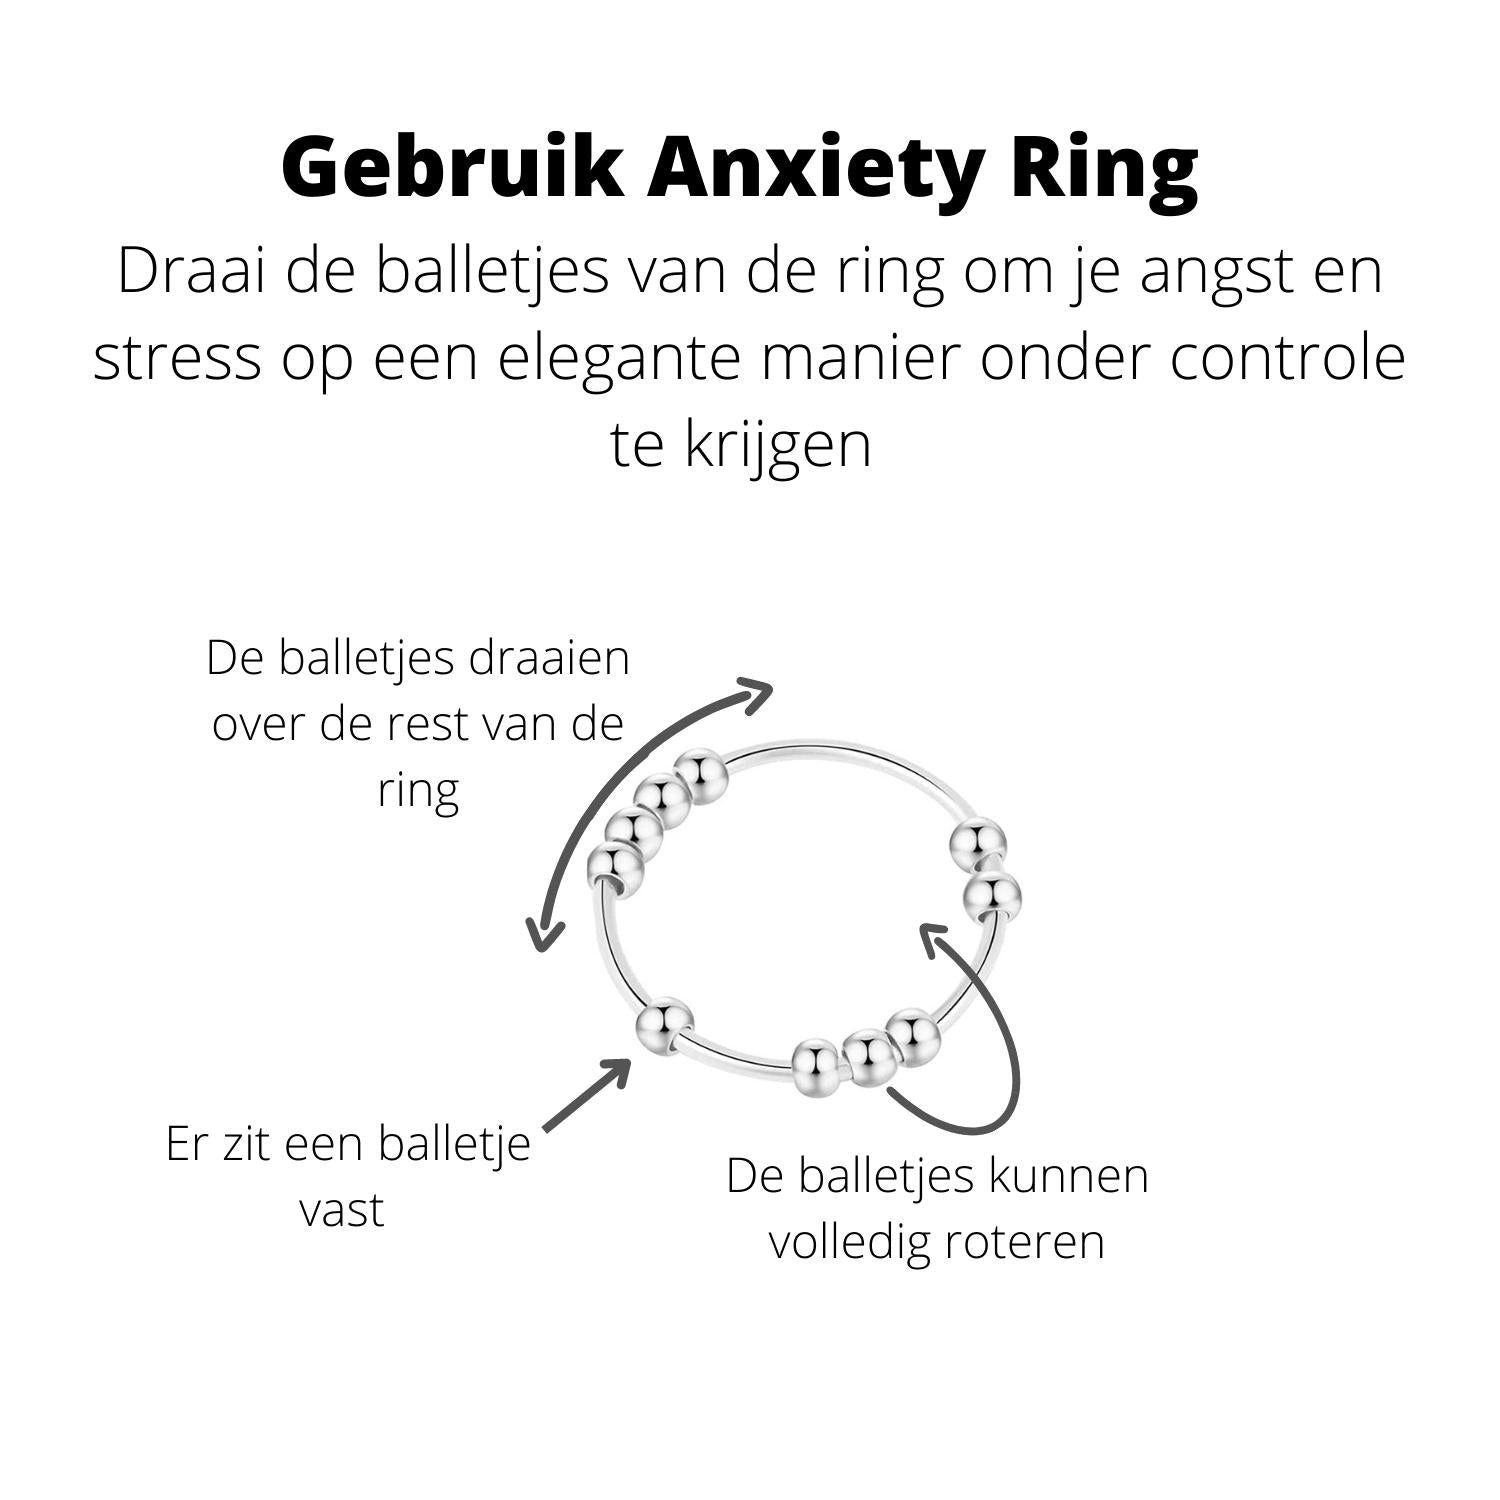 Anxiety Ring zilver kleurig (RVS) Gebruik